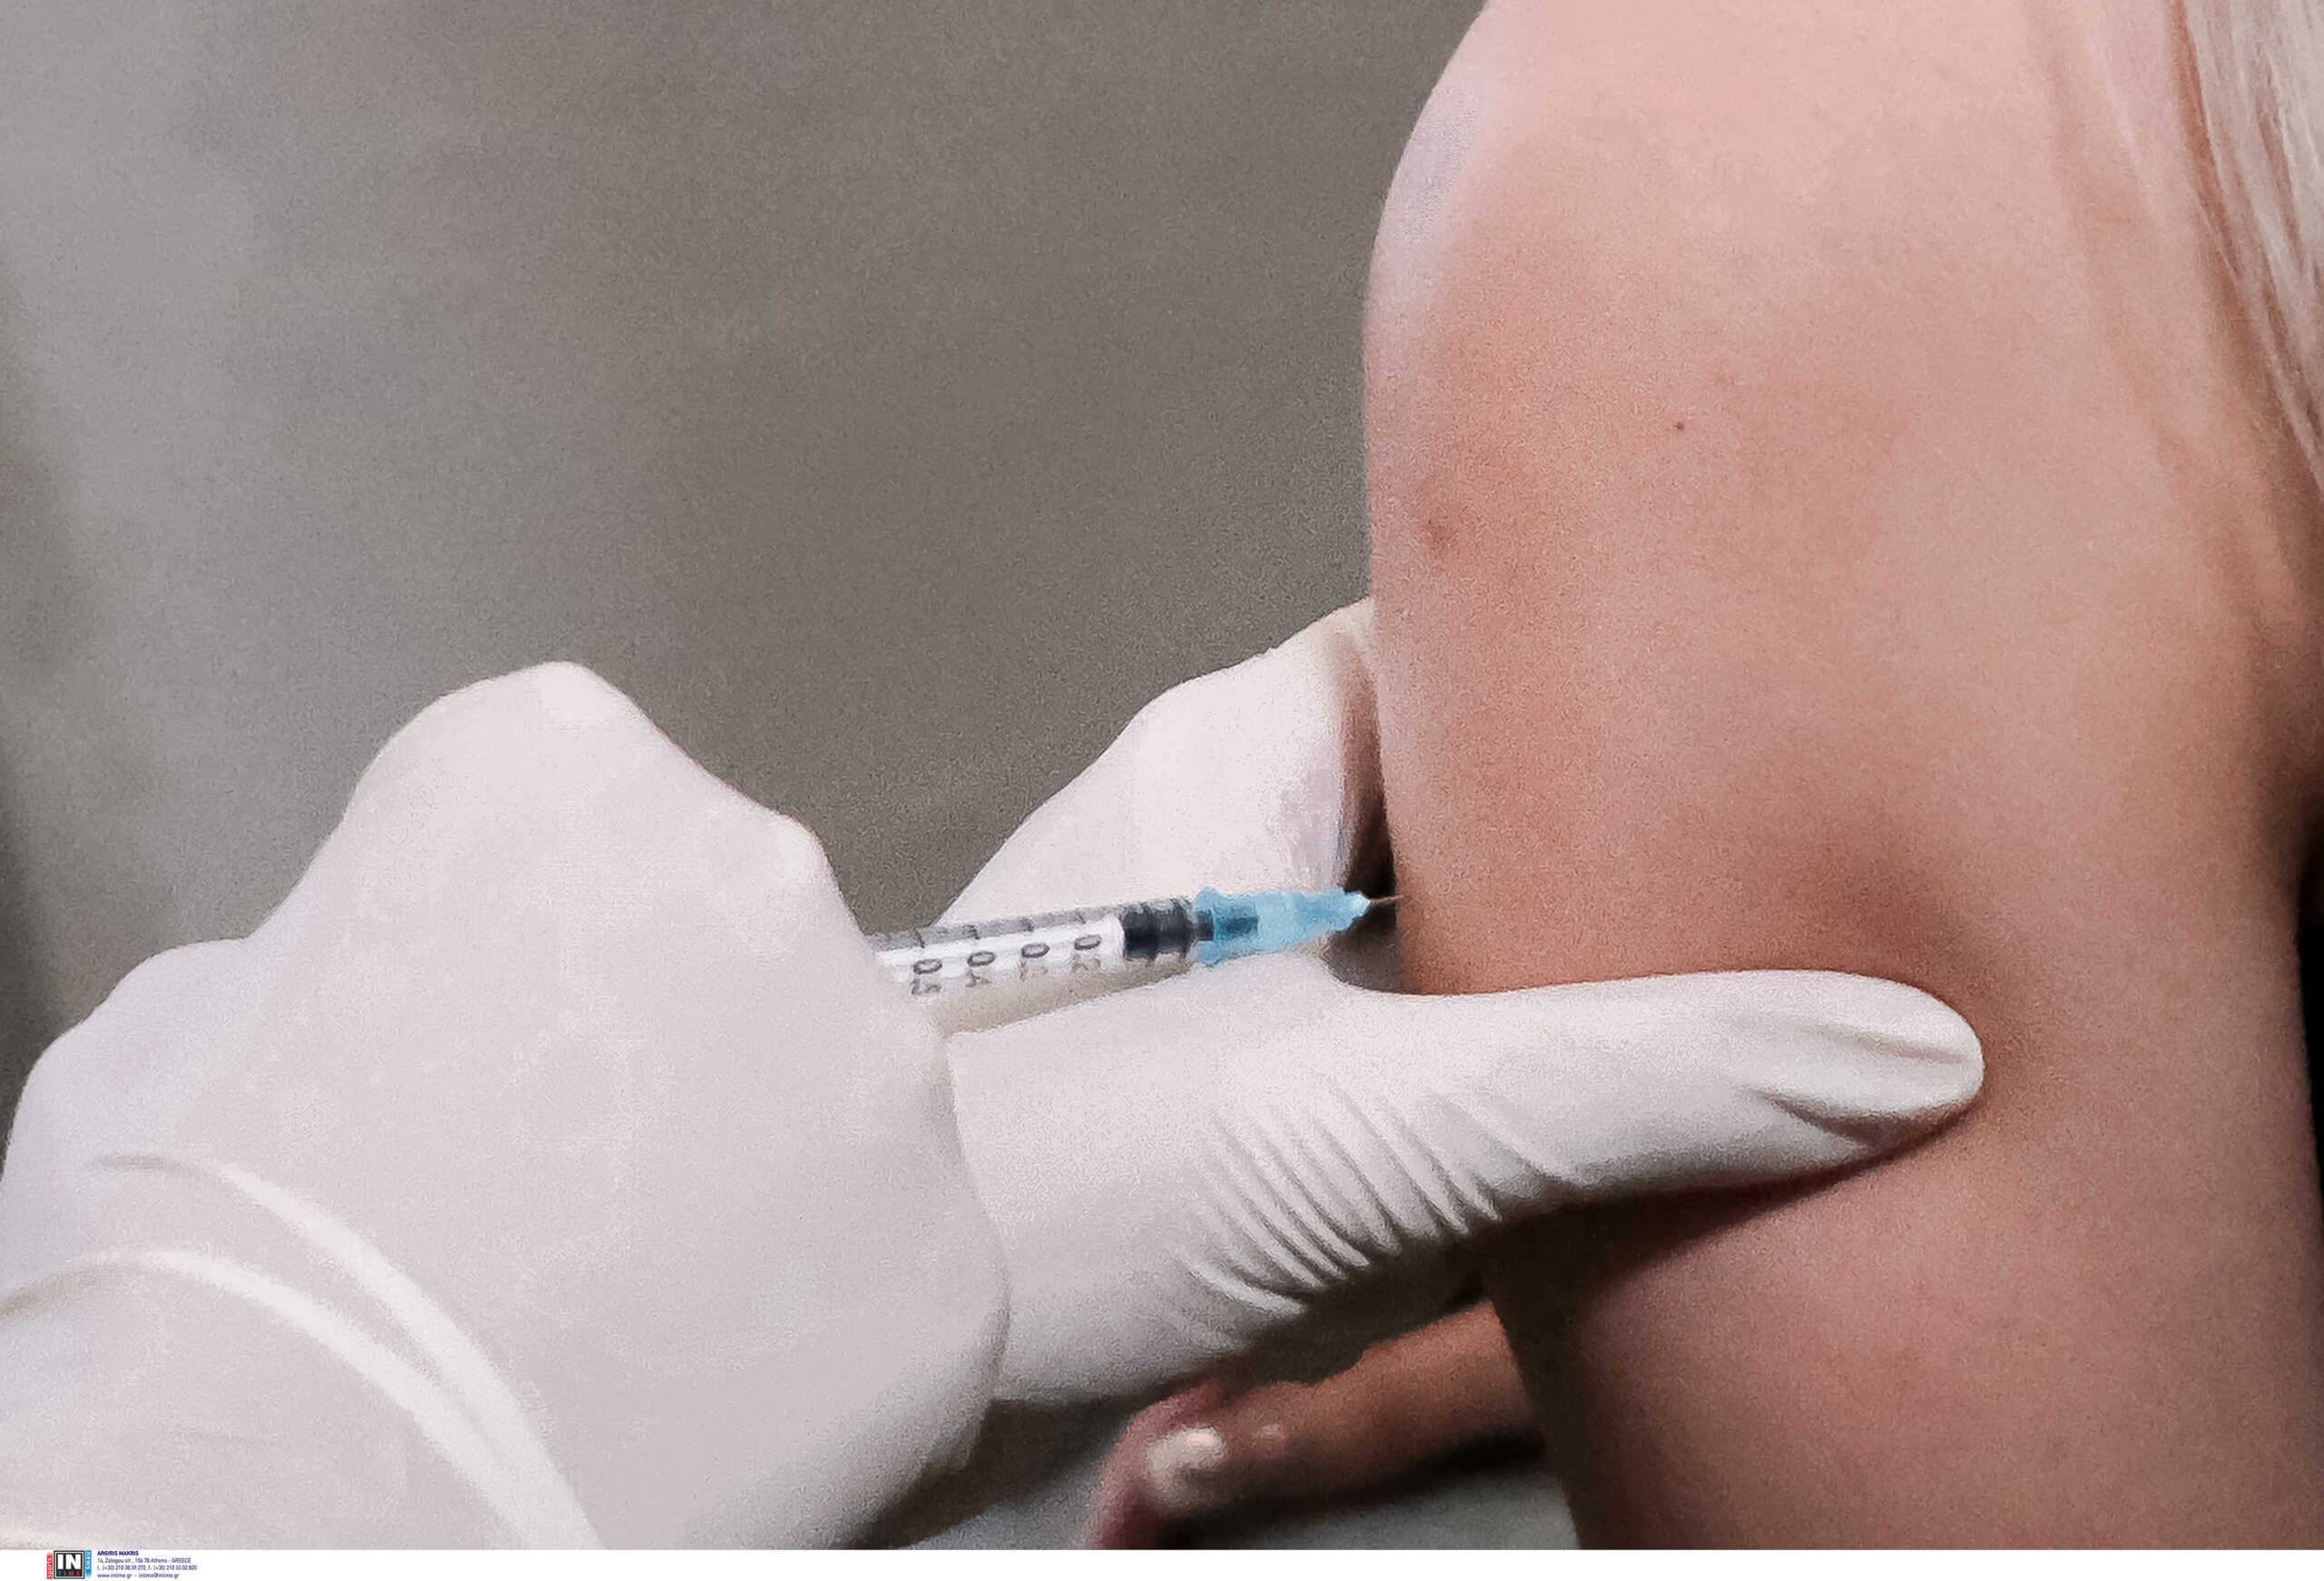 Ξεκίνησε ο αντιγριπικός εμβολιασμός στο Φαρμακείο χωρίς συνταγή – Σήμερα ψηφίζεται η τροπολογία στην Βουλή